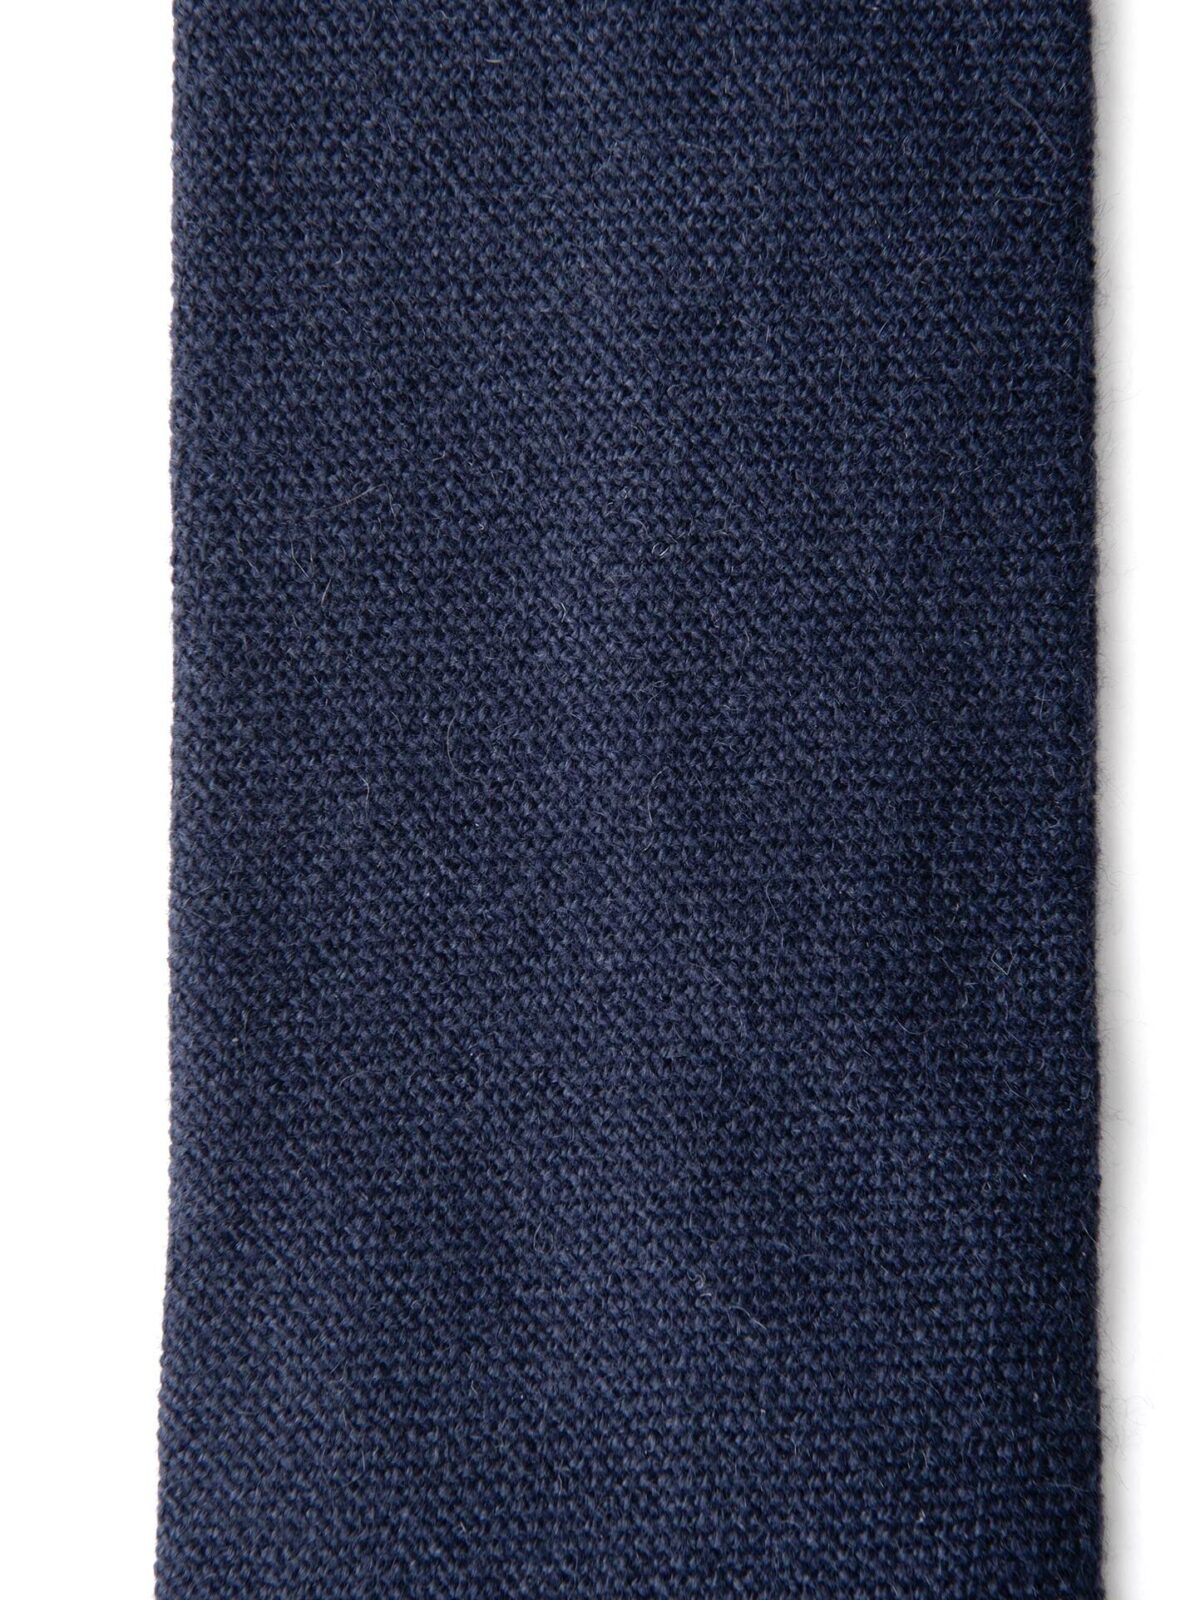 Navy Cashmere Tie